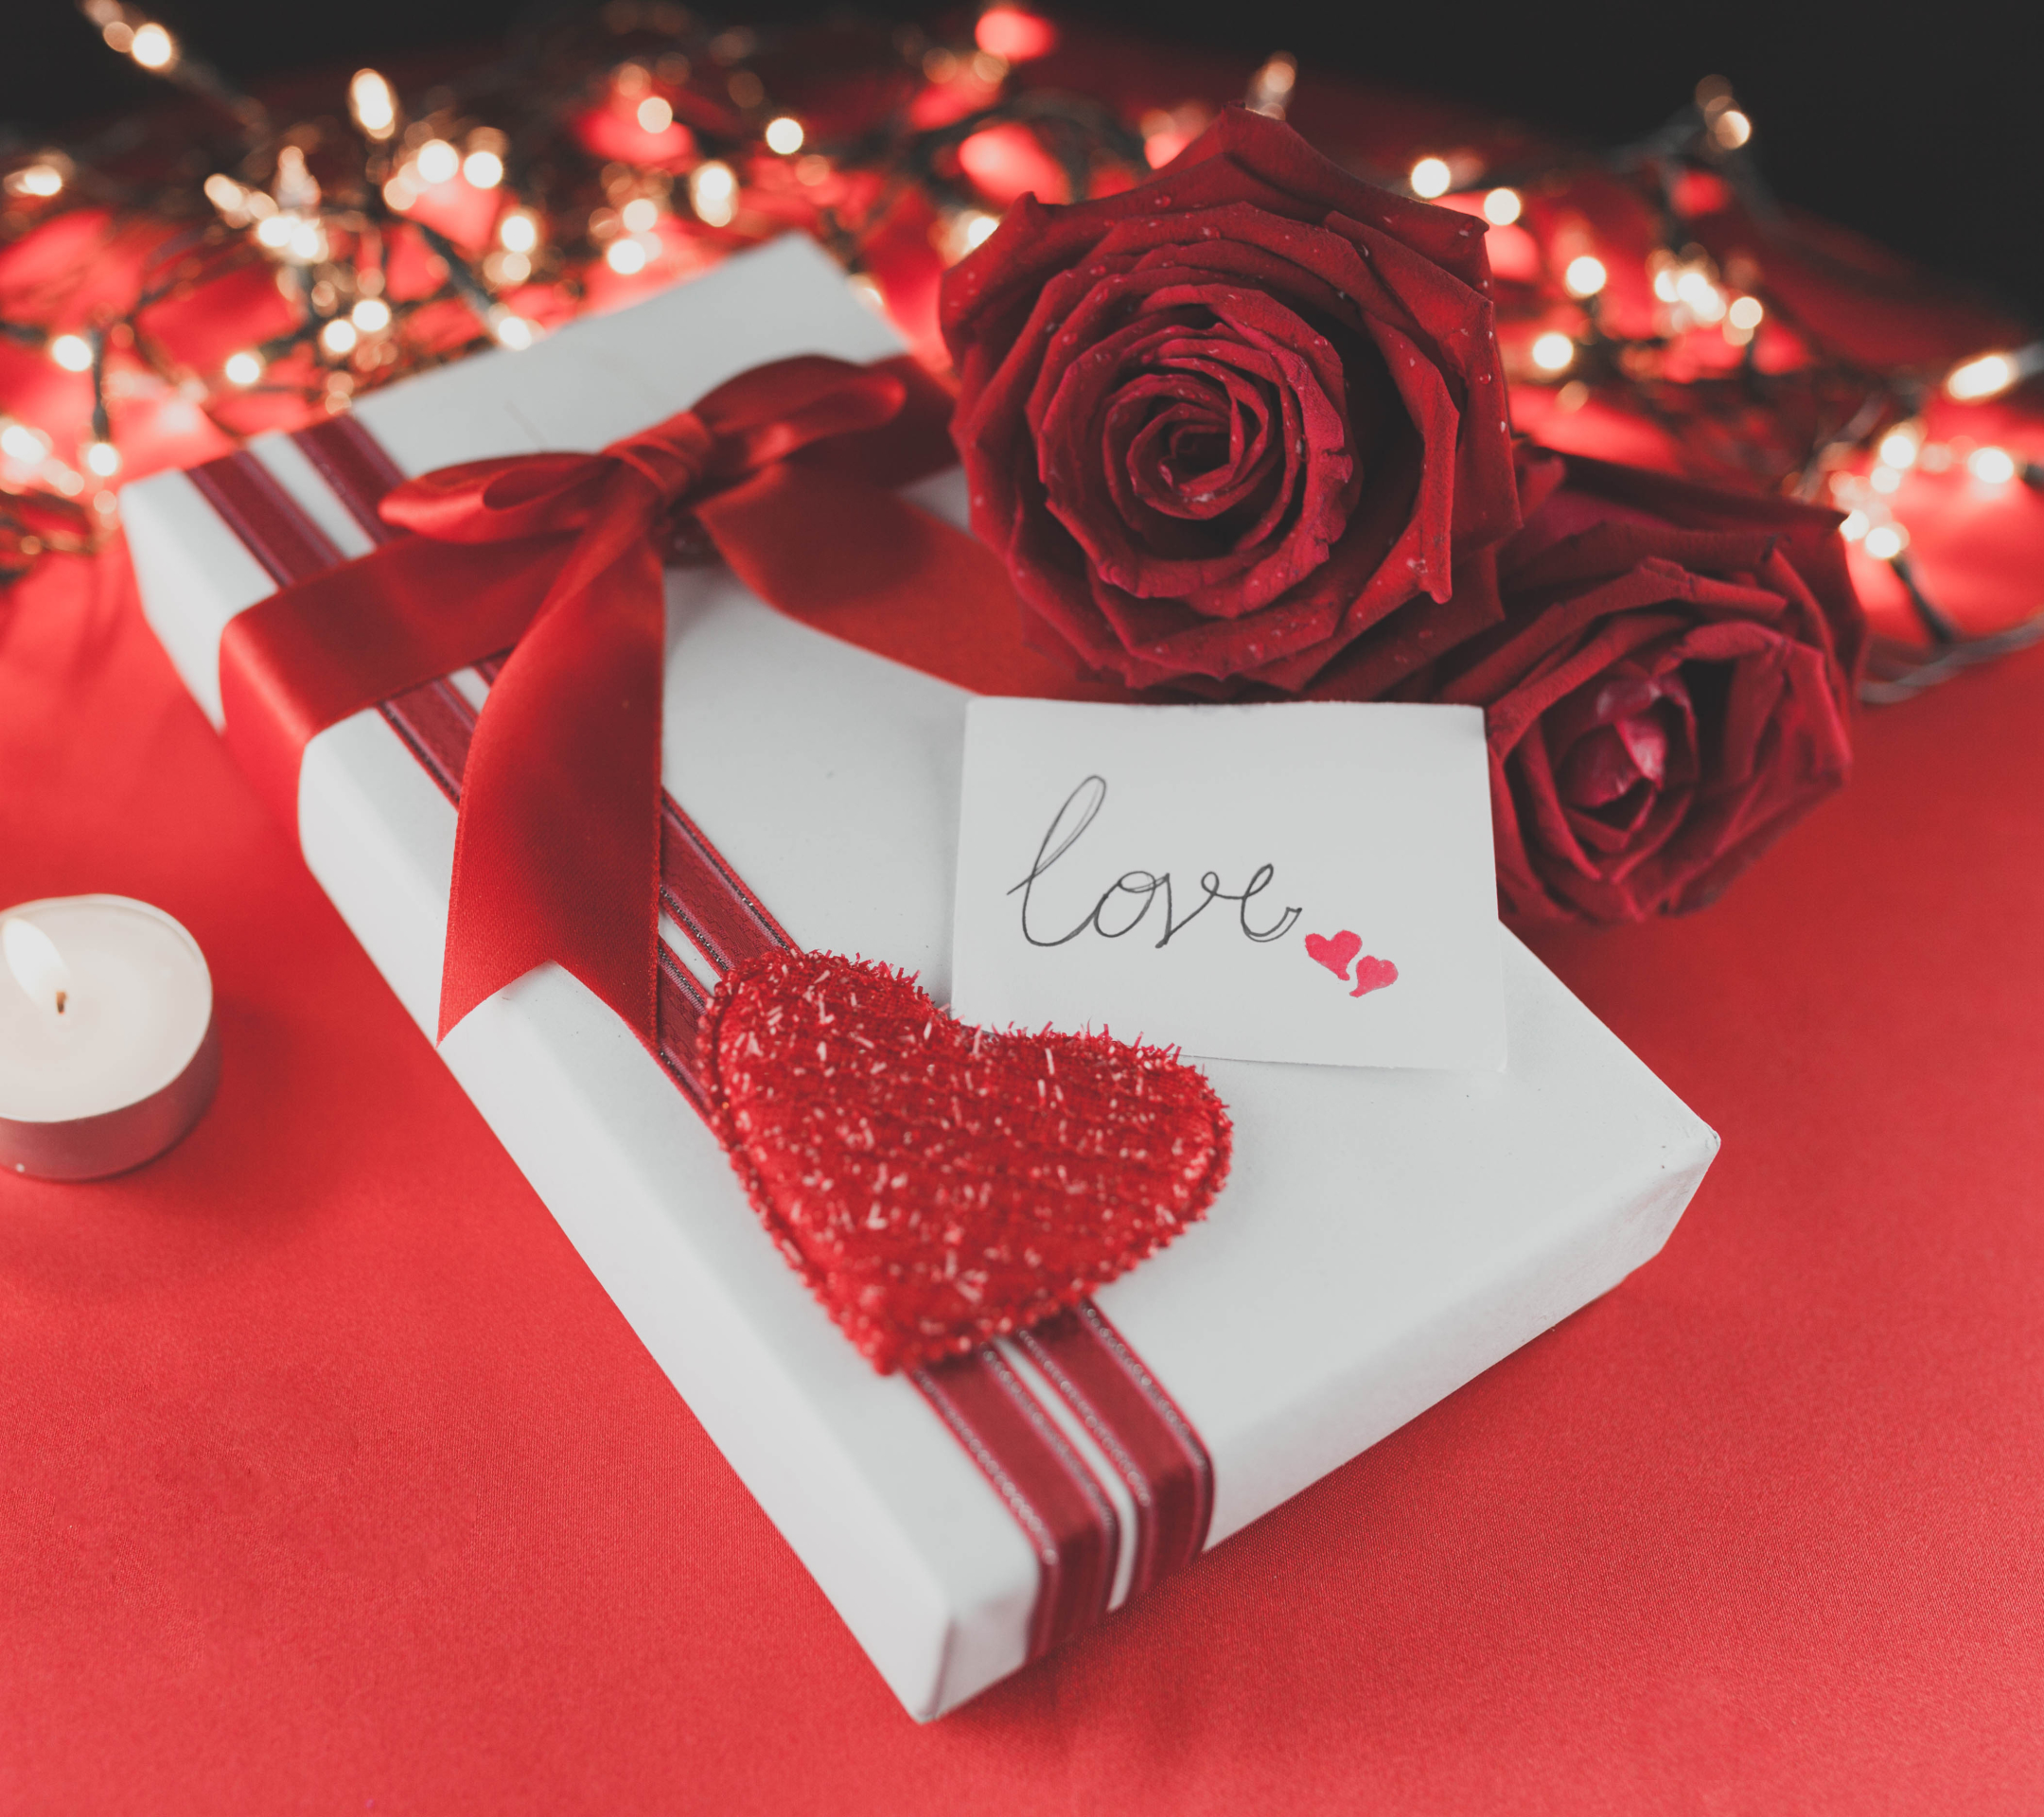 Скачать обои бесплатно Любовь, Роза, Подарок, Свеча, Подарки, Красная Роза, День Святого Валентина, Праздничные, Красный Цветок картинка на рабочий стол ПК